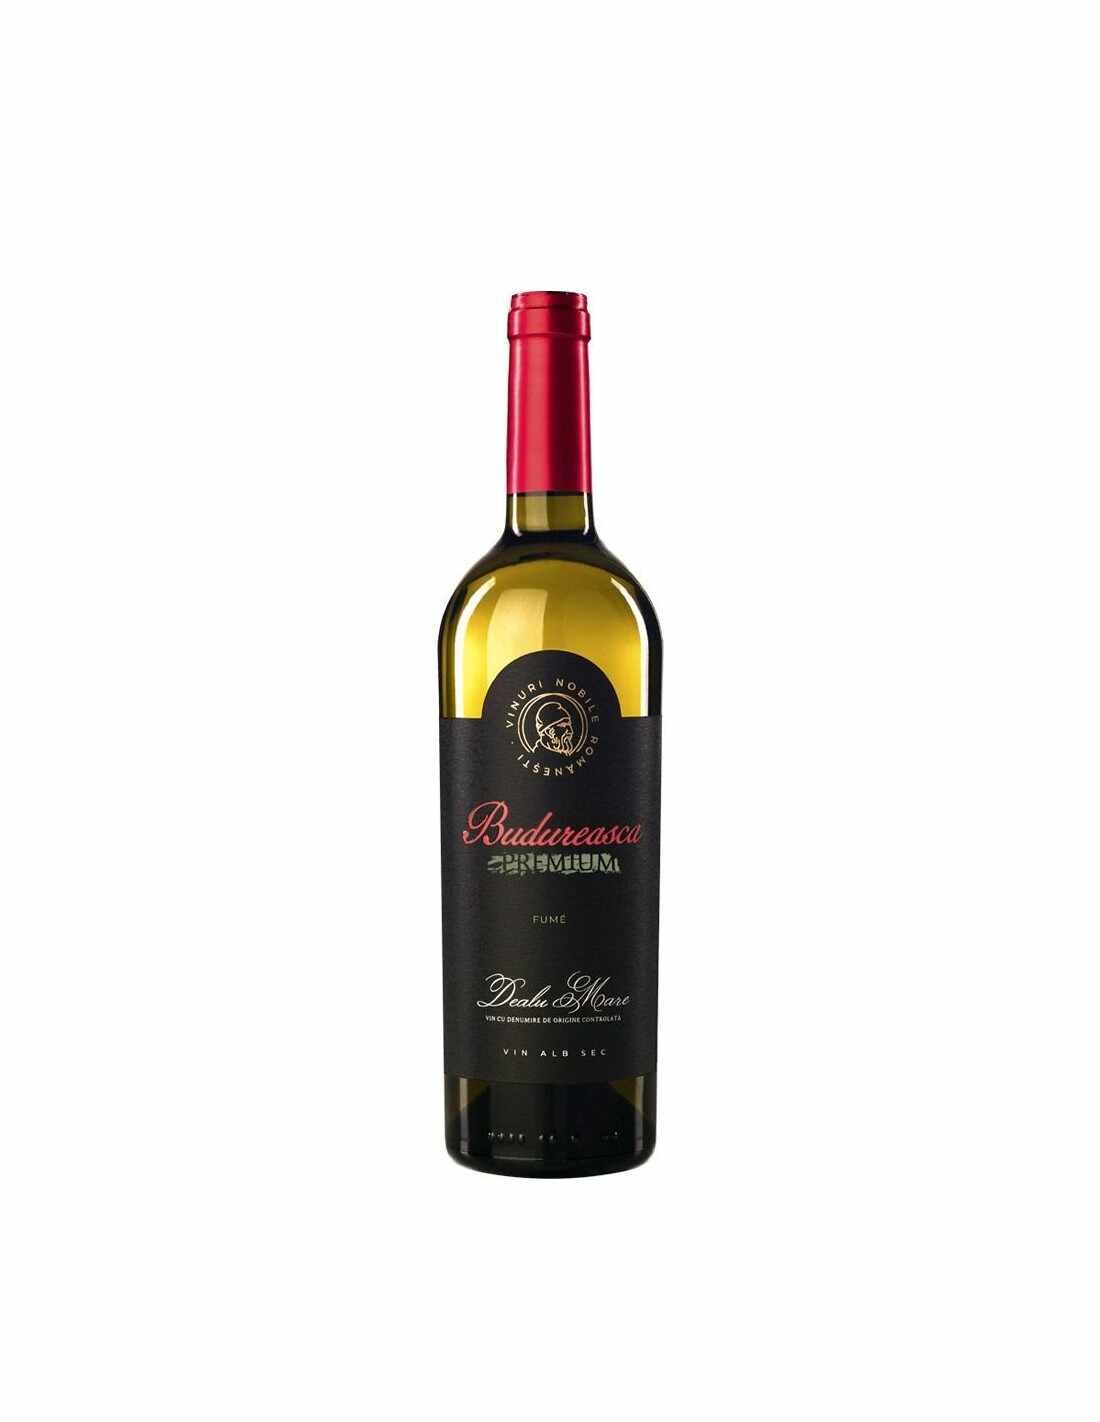 Vin alb sec, Budureasca Premium Fume Dealu Mare, 13.5% alc.,0.75L, Romania